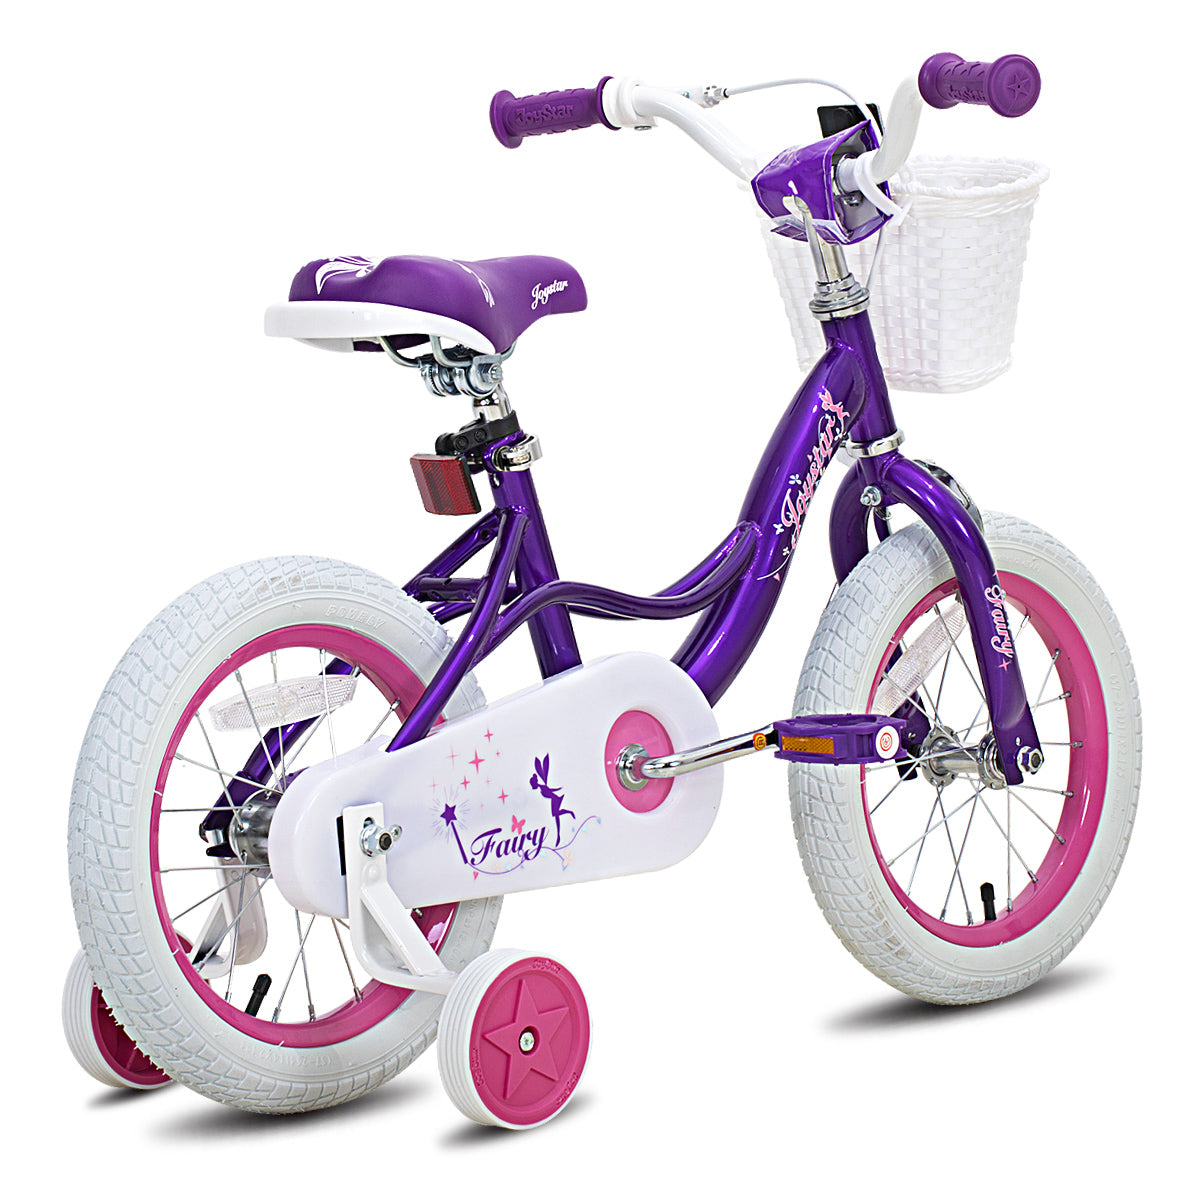 JOYSTAR Fairy Girls Bike for Toddlers & Kids